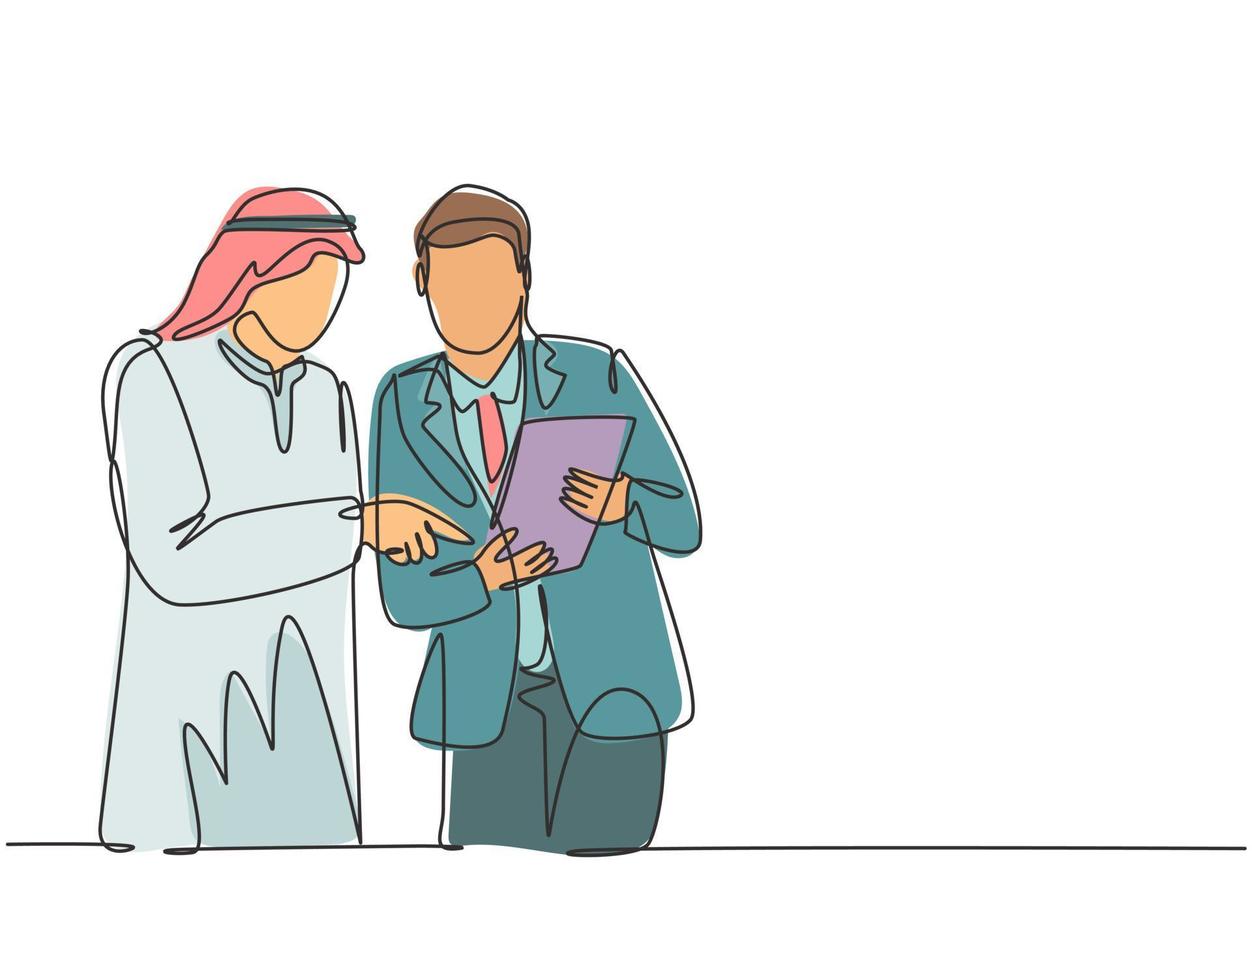 enda kontinuerlig ritning av unga muslimer som analyserar och diskuterar årlig affärsrapport med sin kollega. arabisk Mellanöstern tyg shmagh, tina, mantel. en rita design vektor illustration